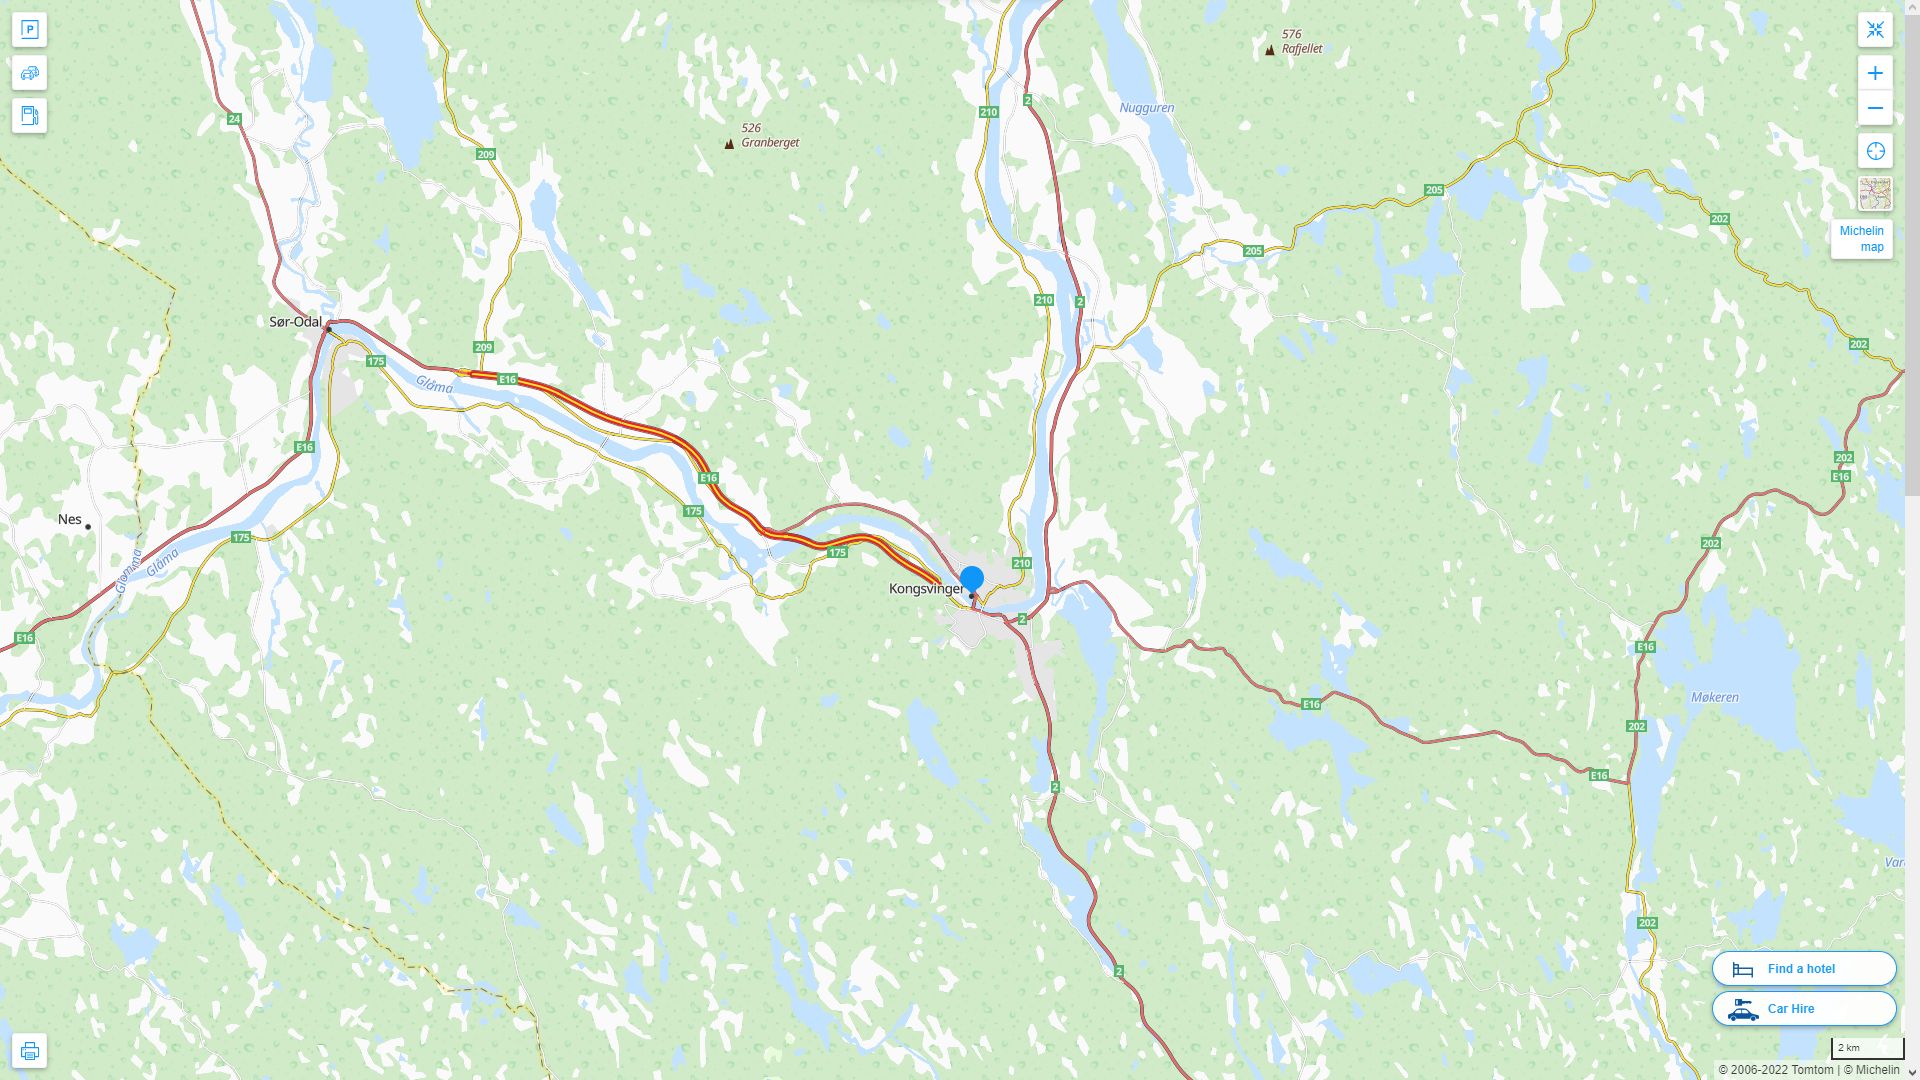 Kongsvinger Norvege Autoroute et carte routiere